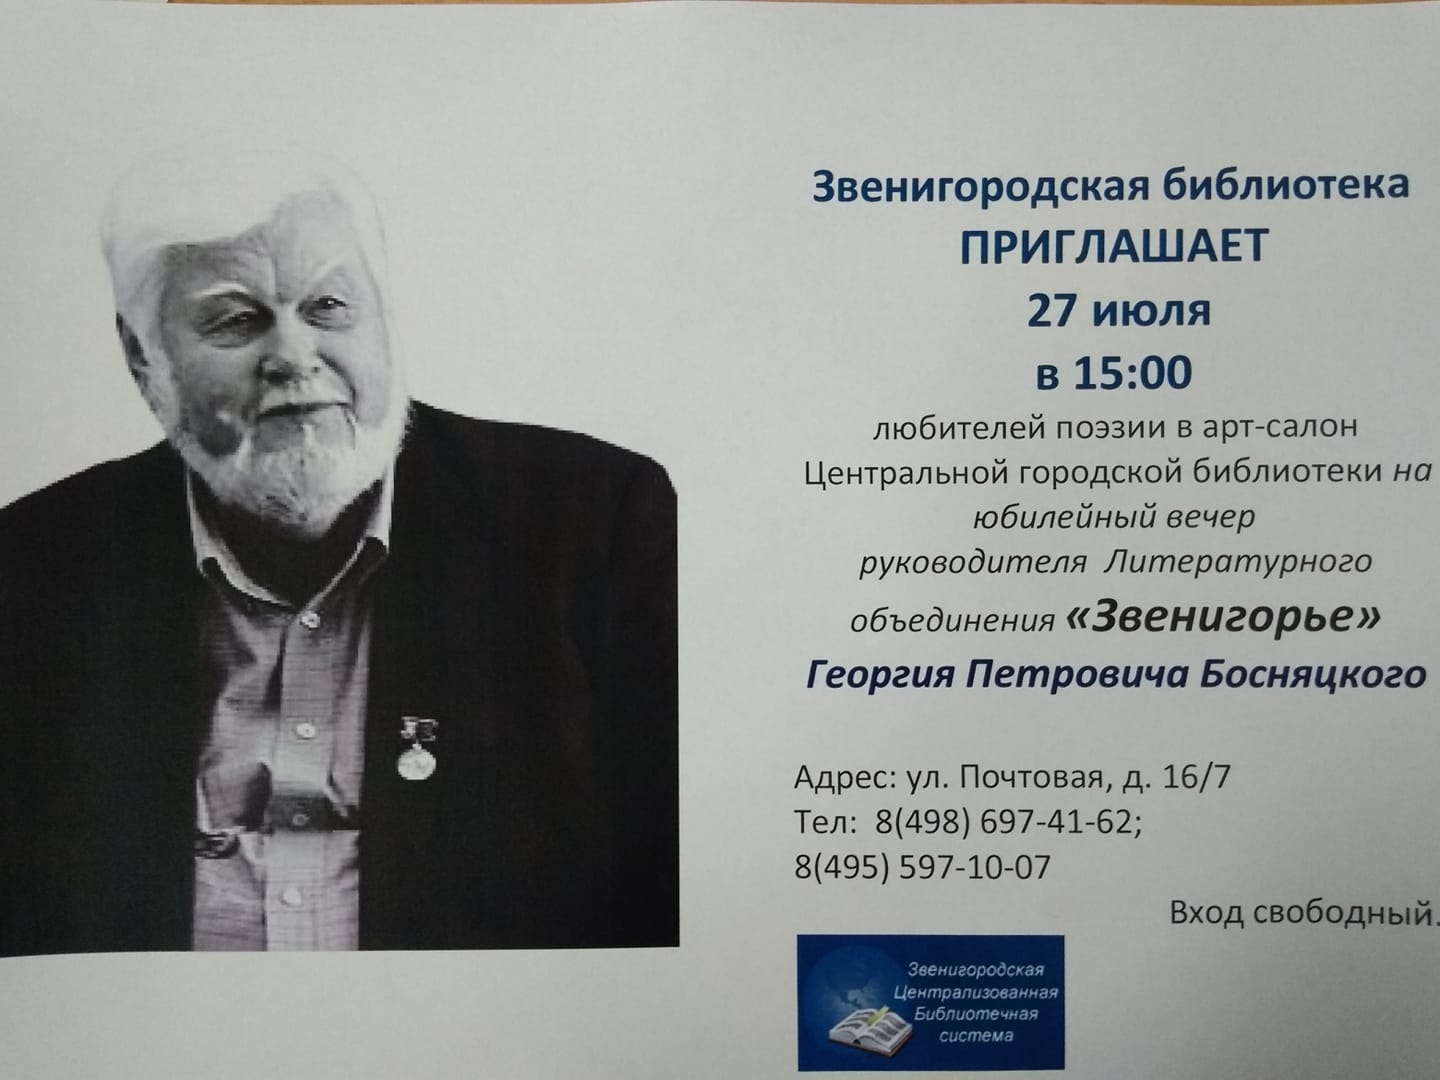 Босняцкий Георгий Петрович